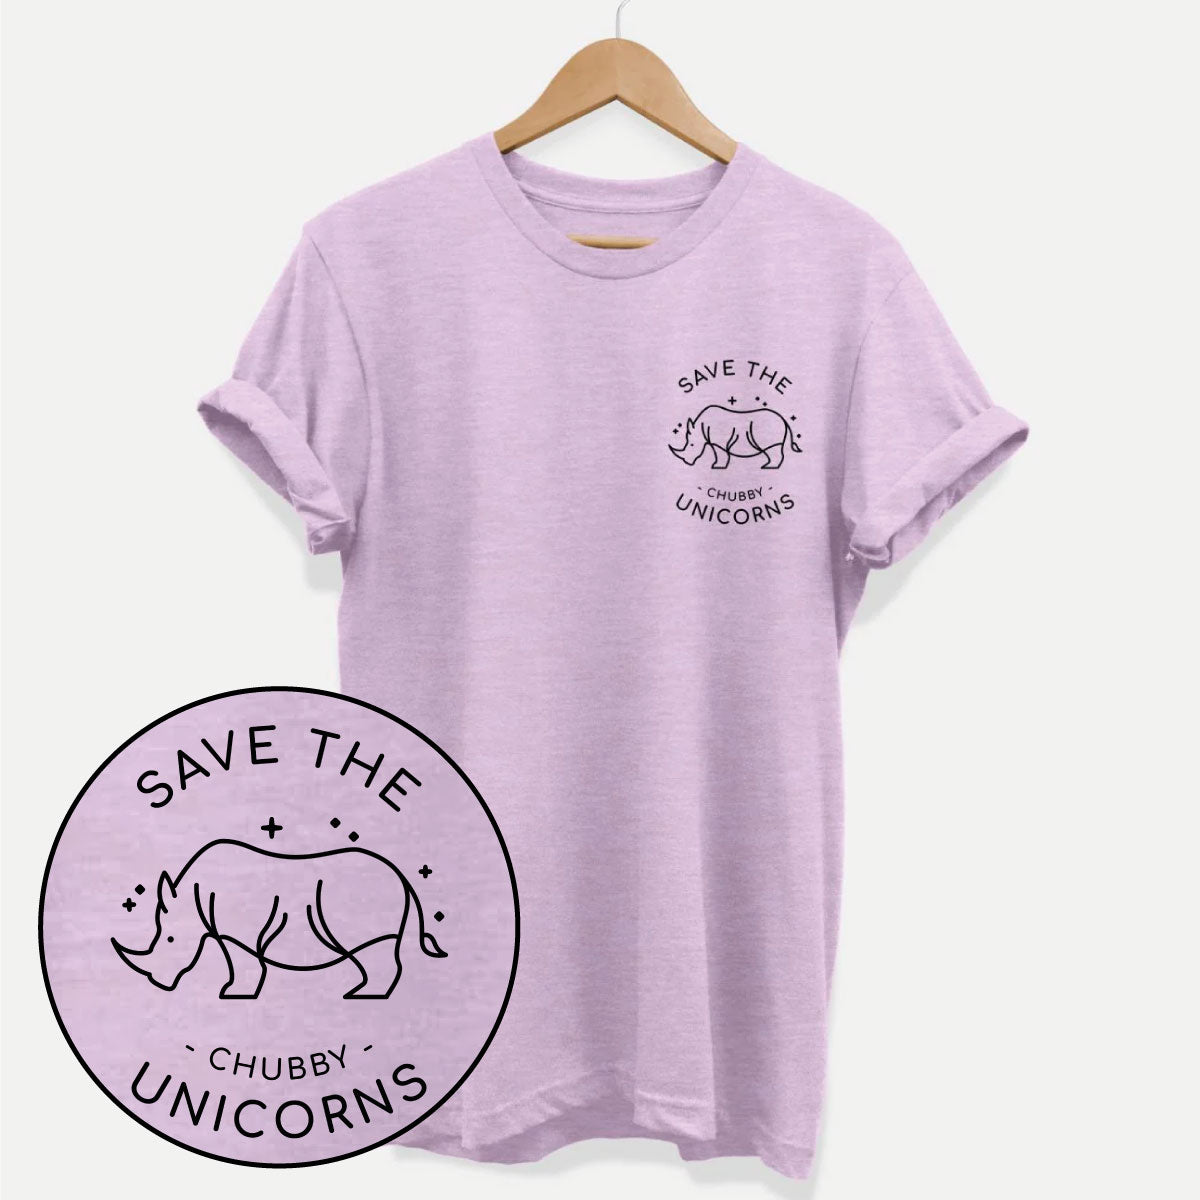 Save The Chubby Unicorns Corner Ethical Vegan T-Shirt (Unisex) product